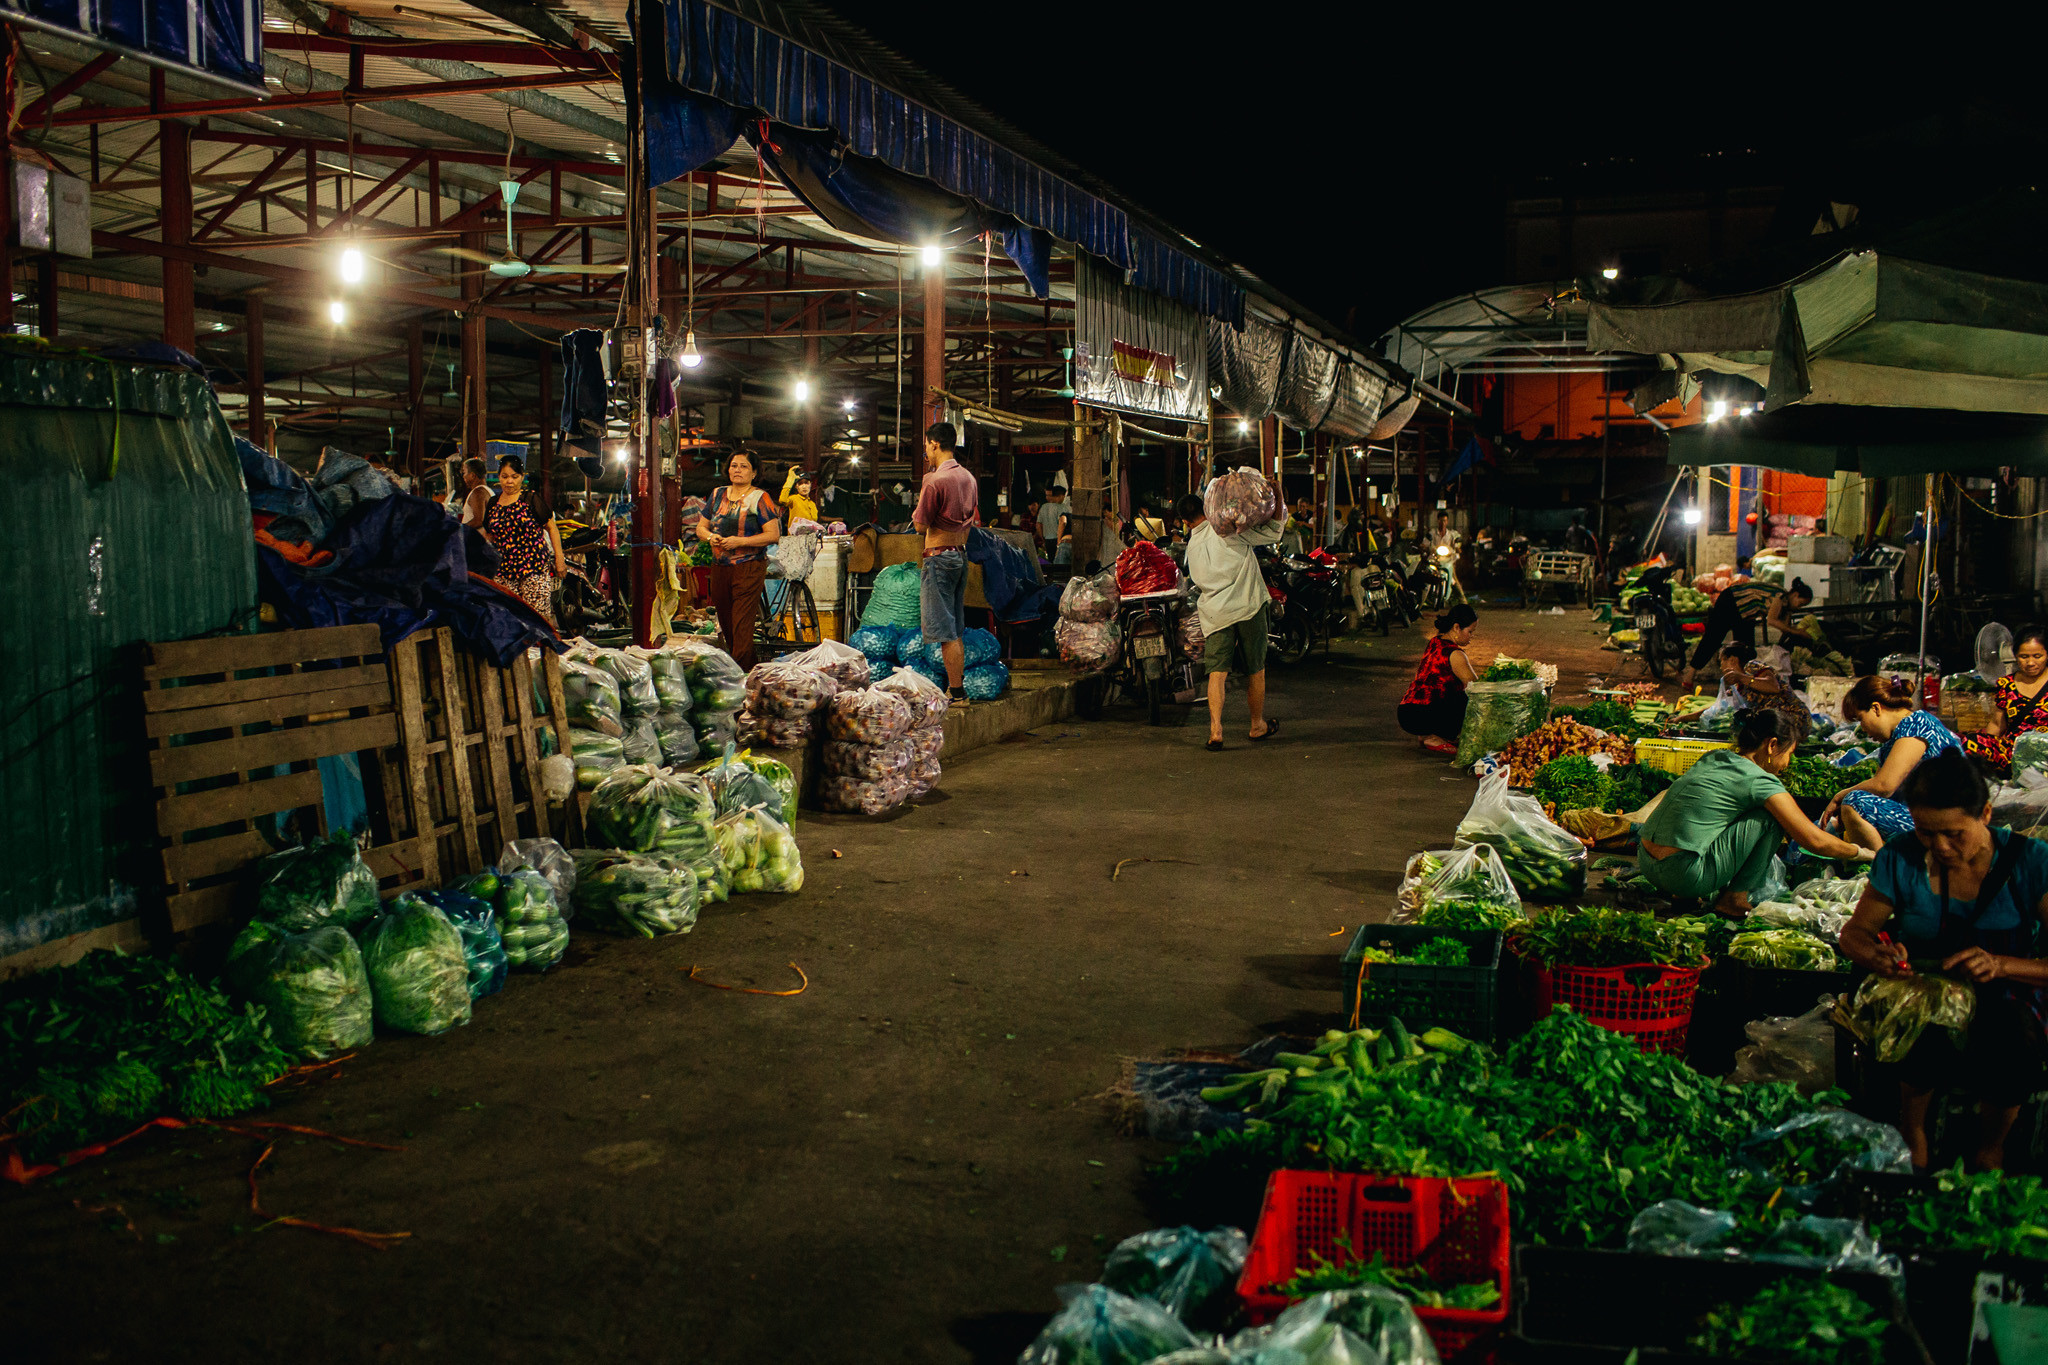 Chợ đầu mối Vinh nằm trên đường Hồng Sơn, ngay cạnh chợ Vinh, được biết đến là đầu mối cung cấp rau củ, hoa quả lớn nhất của thành phố. Ảnh: Kiên Rose